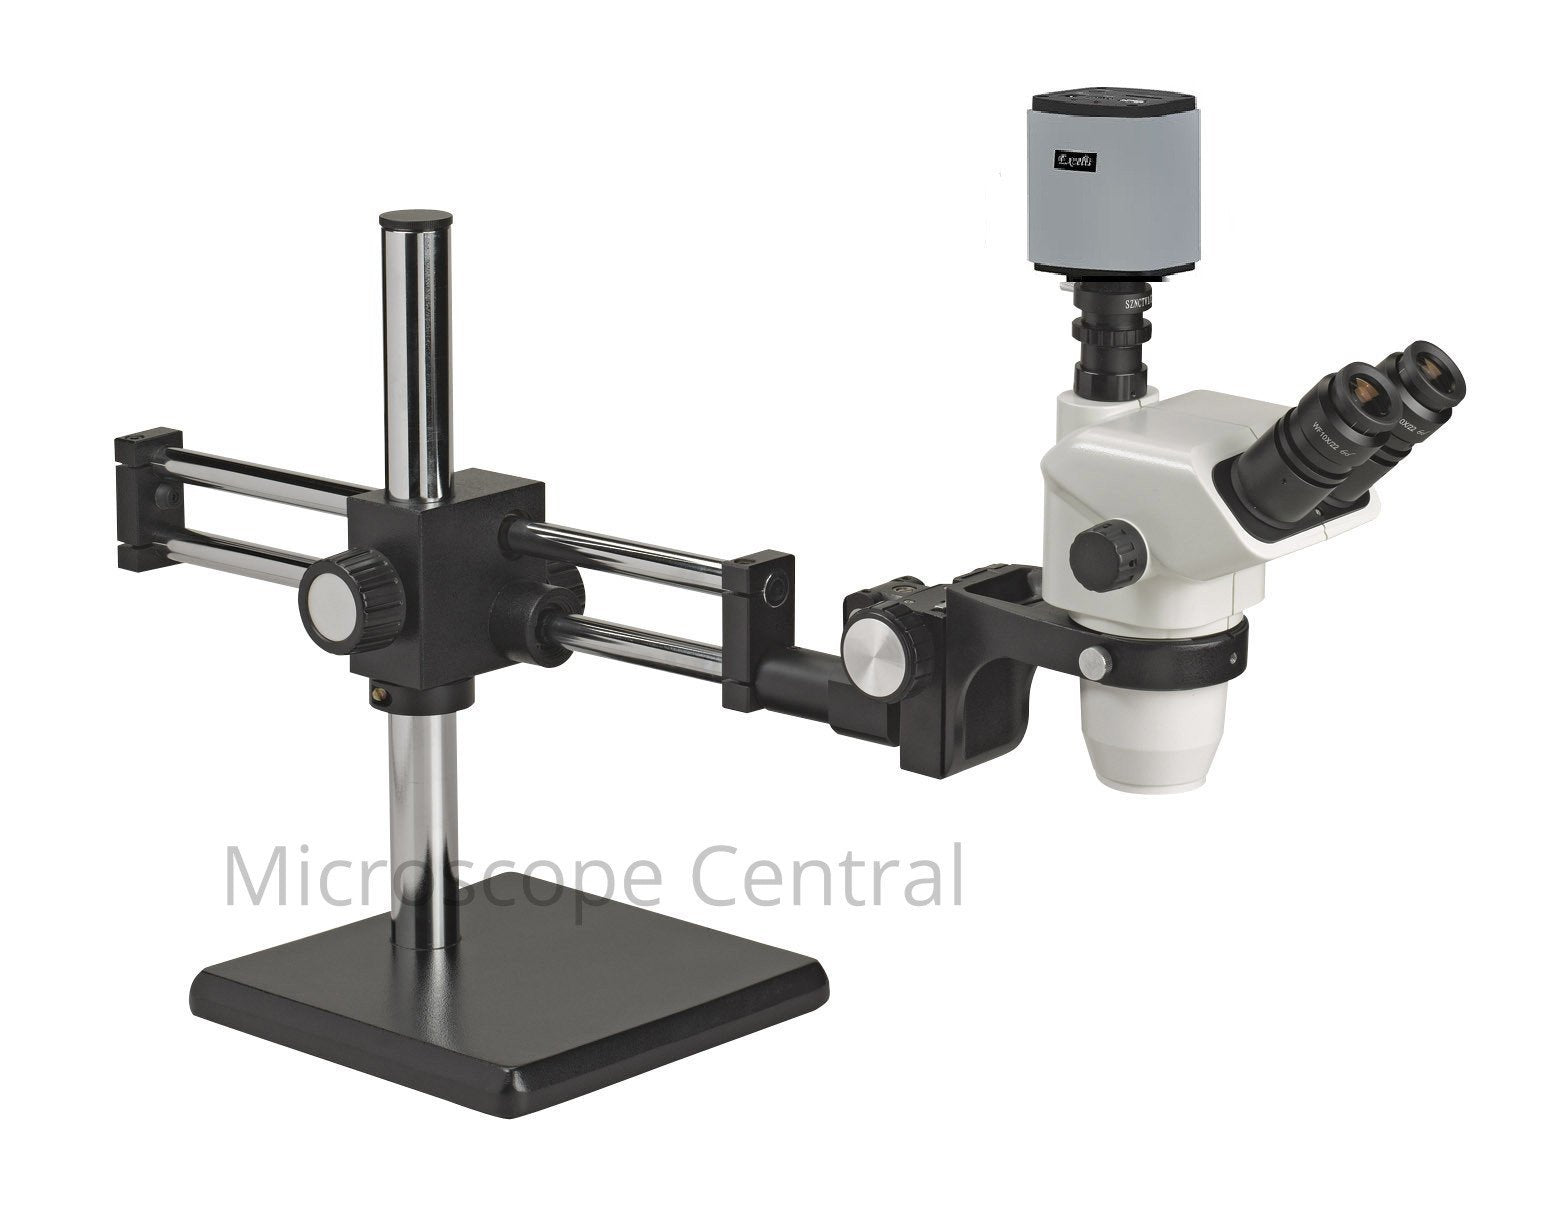 Accu-Scope 3076 Boom Stand Digital Microscope 0.67x - 4.5x